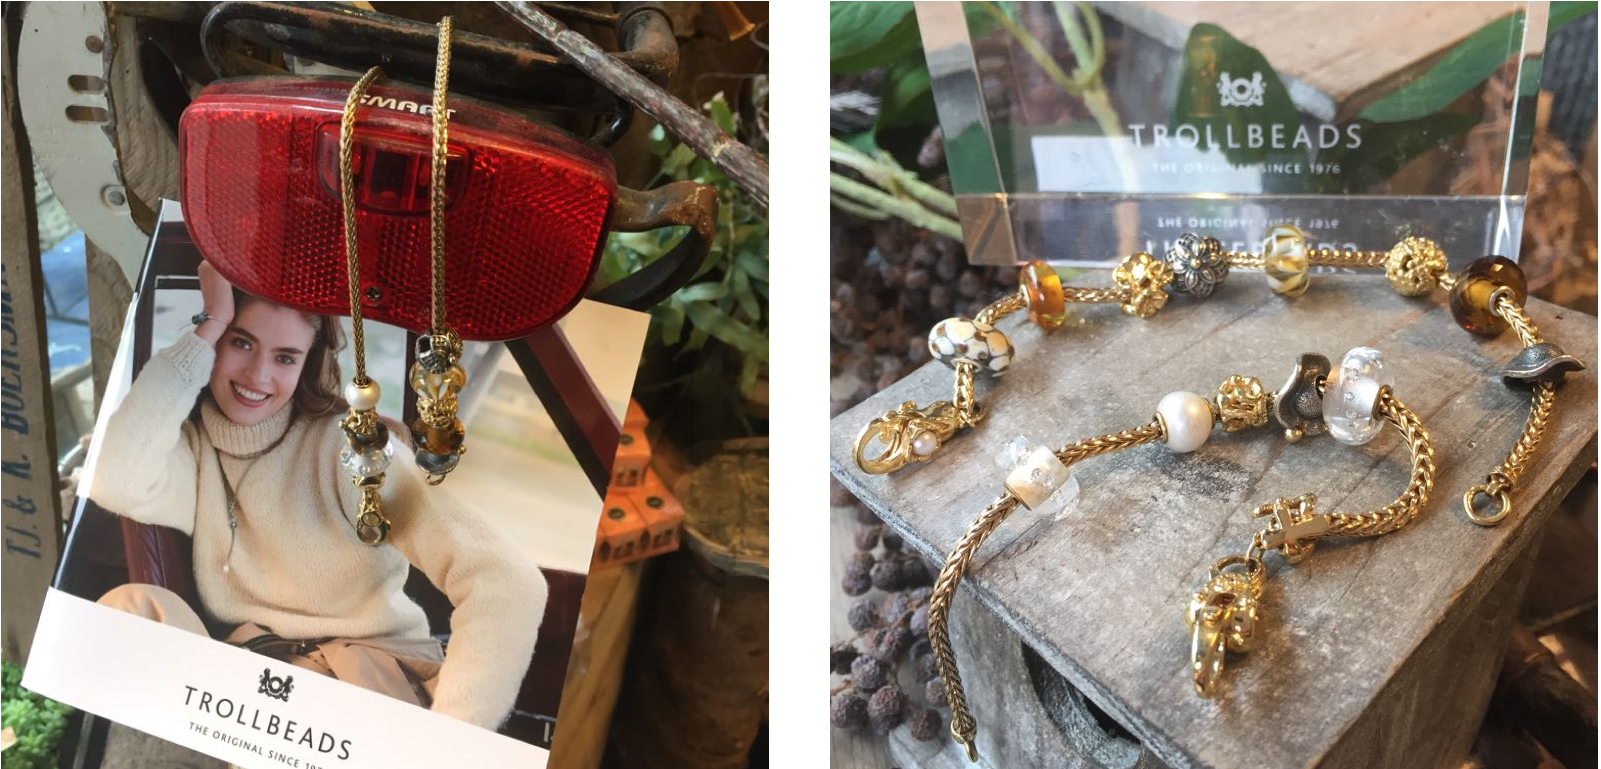 Trollbeads-goud-sieraden-mooi-te-combineren-met-glaskralen-Wolters-Juweliers-Coevorden-Emmen